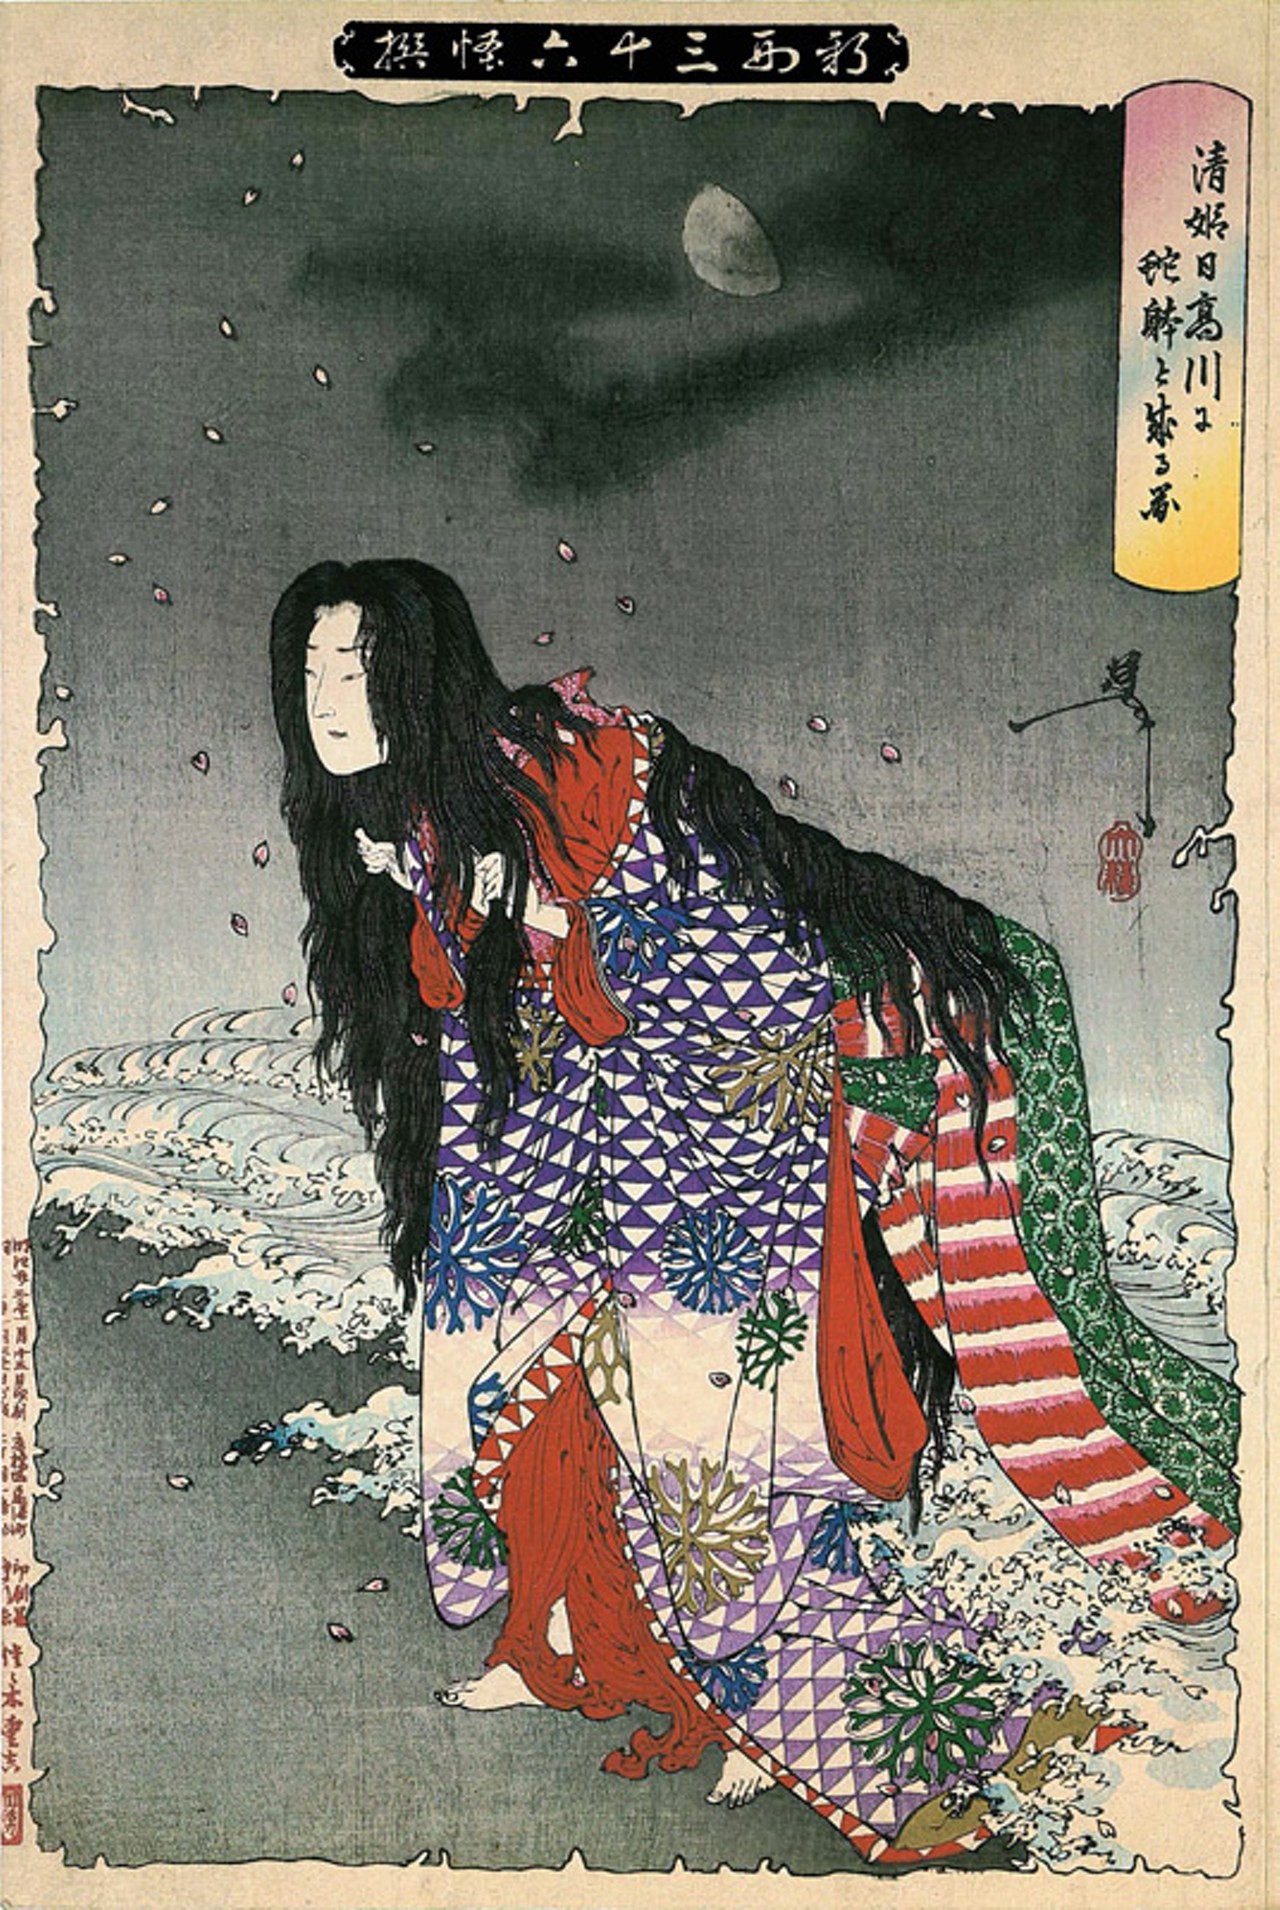 Tsukioka Yoshitoshi - 30. April 1839 - 9. Juni 1892